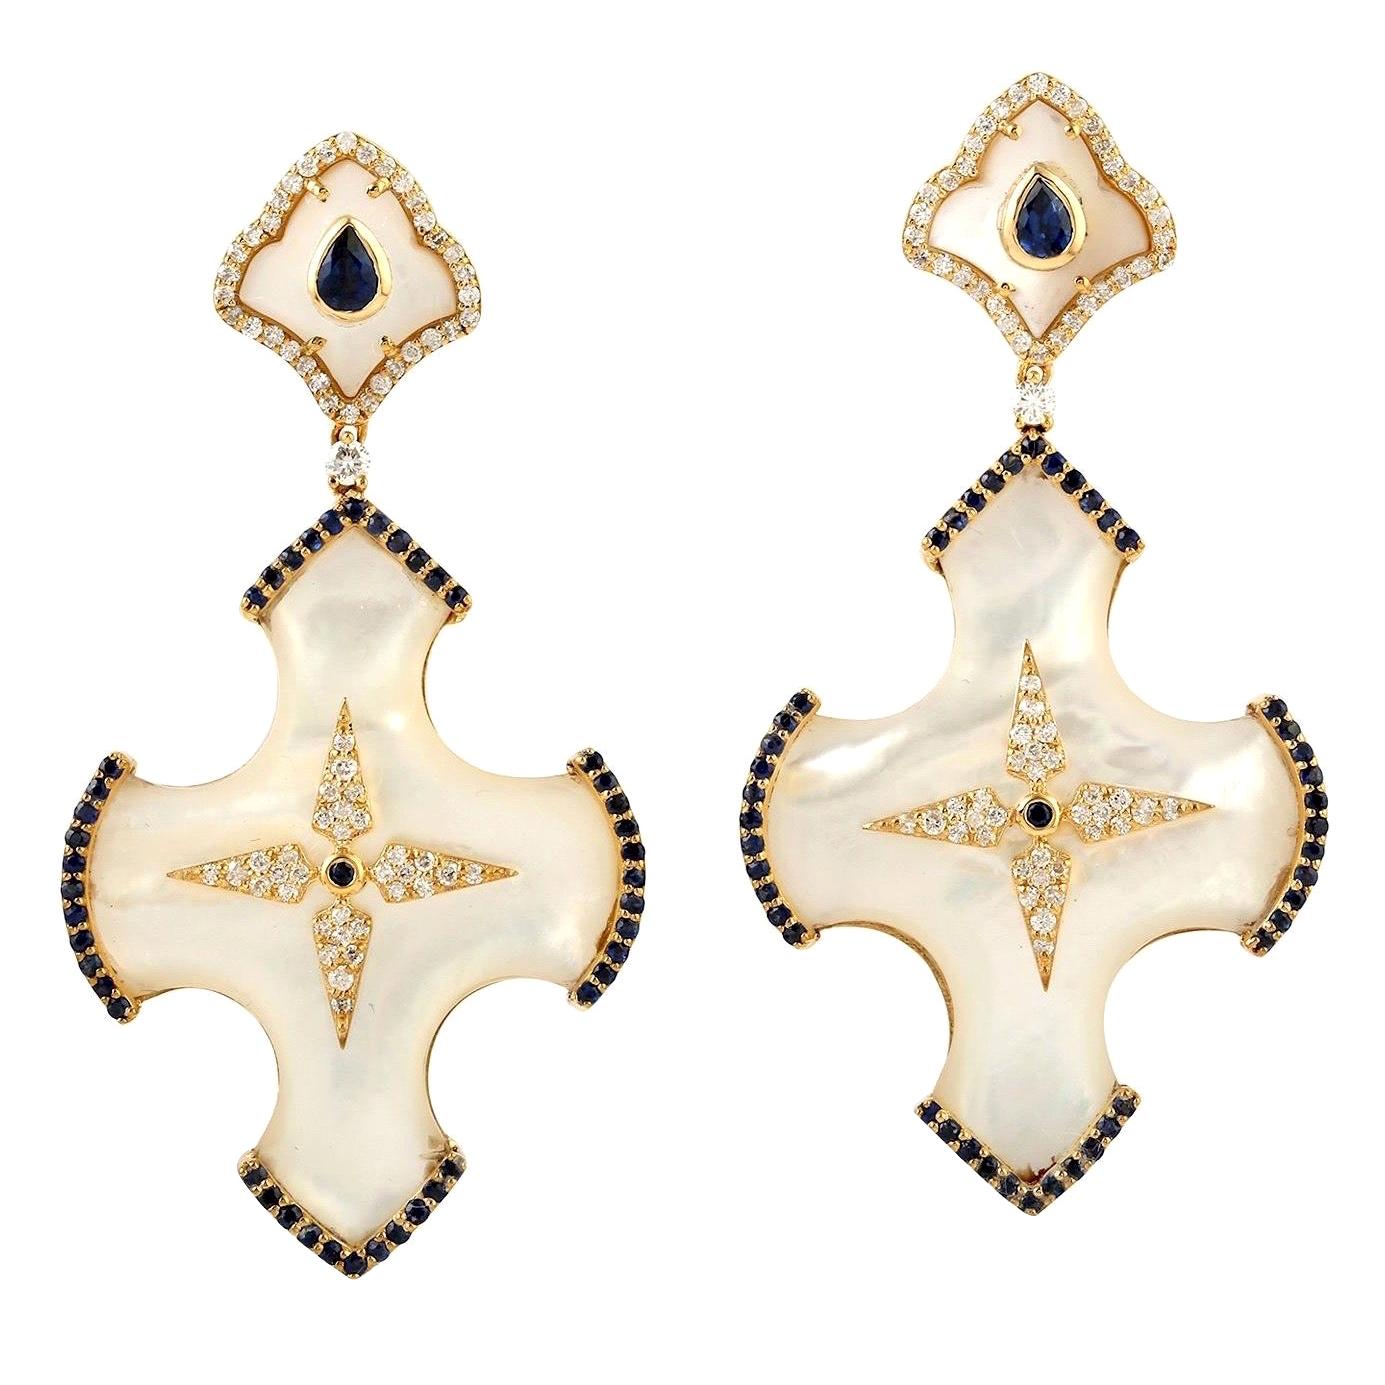 Ohrringe mit blauen Saphiren, Perlen und Diamanten aus 18 Karat Gold